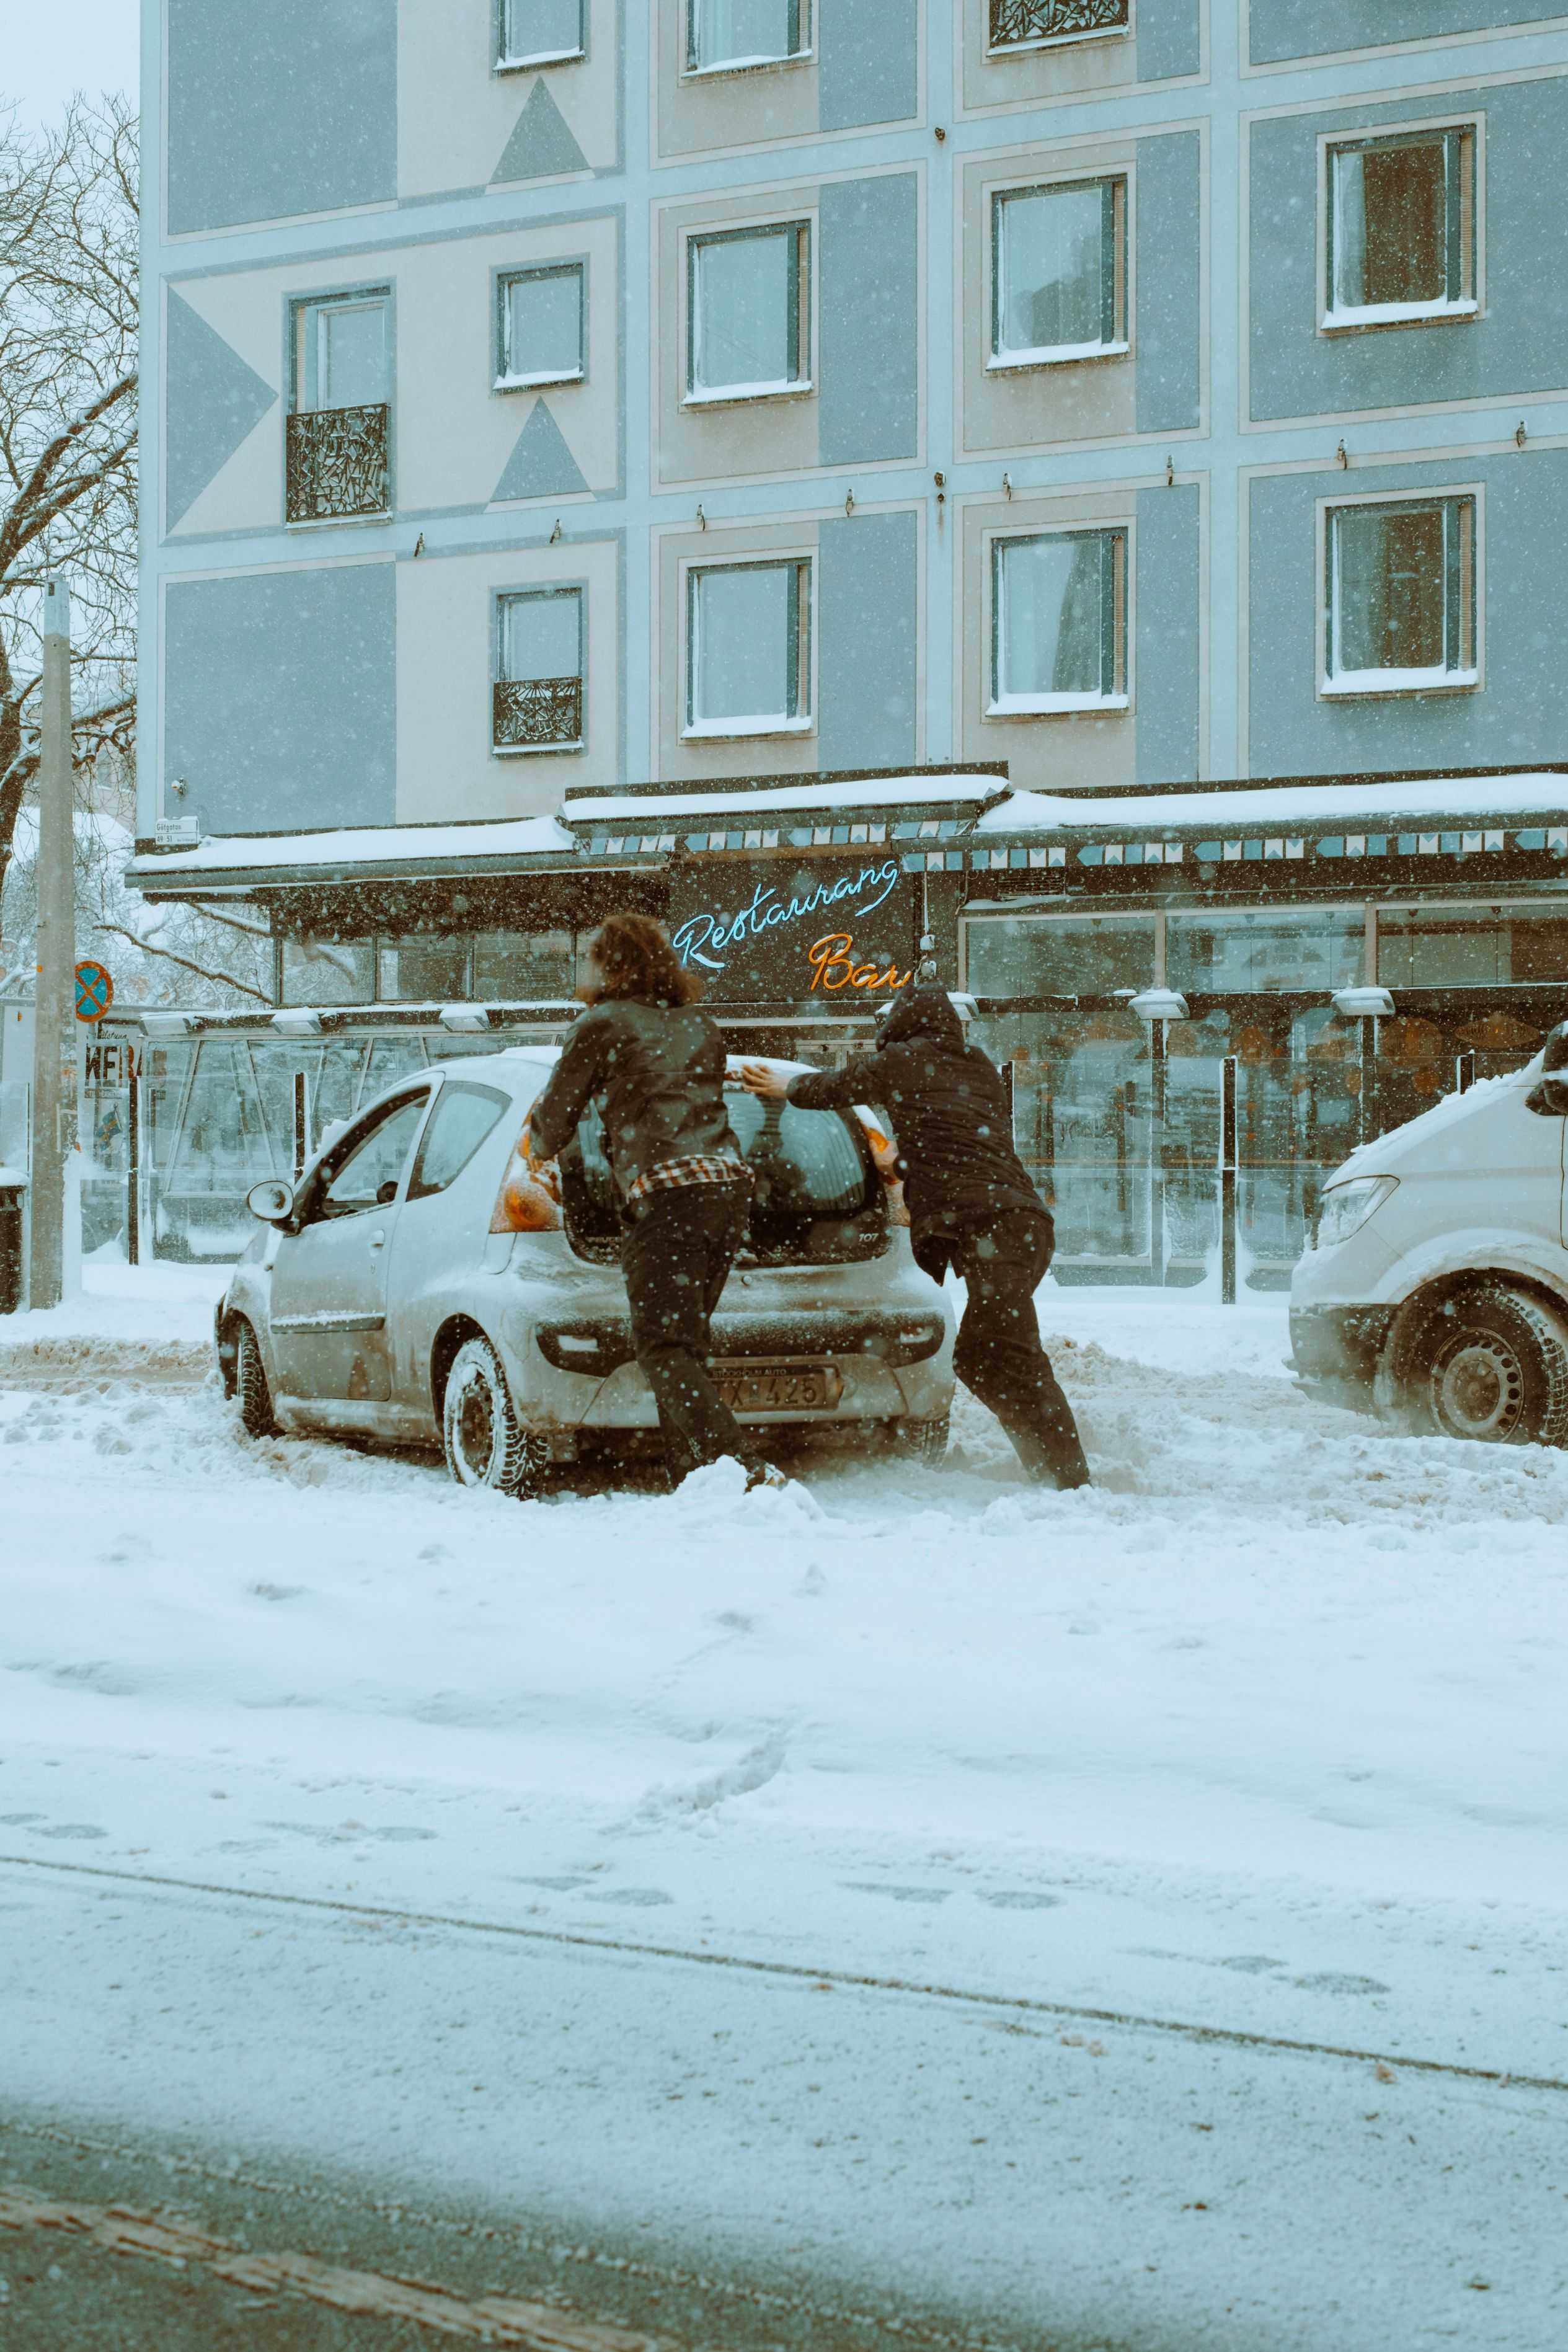 Skrapa bilen i snön och vinterväder med en bilförsäkring jämförd på happens